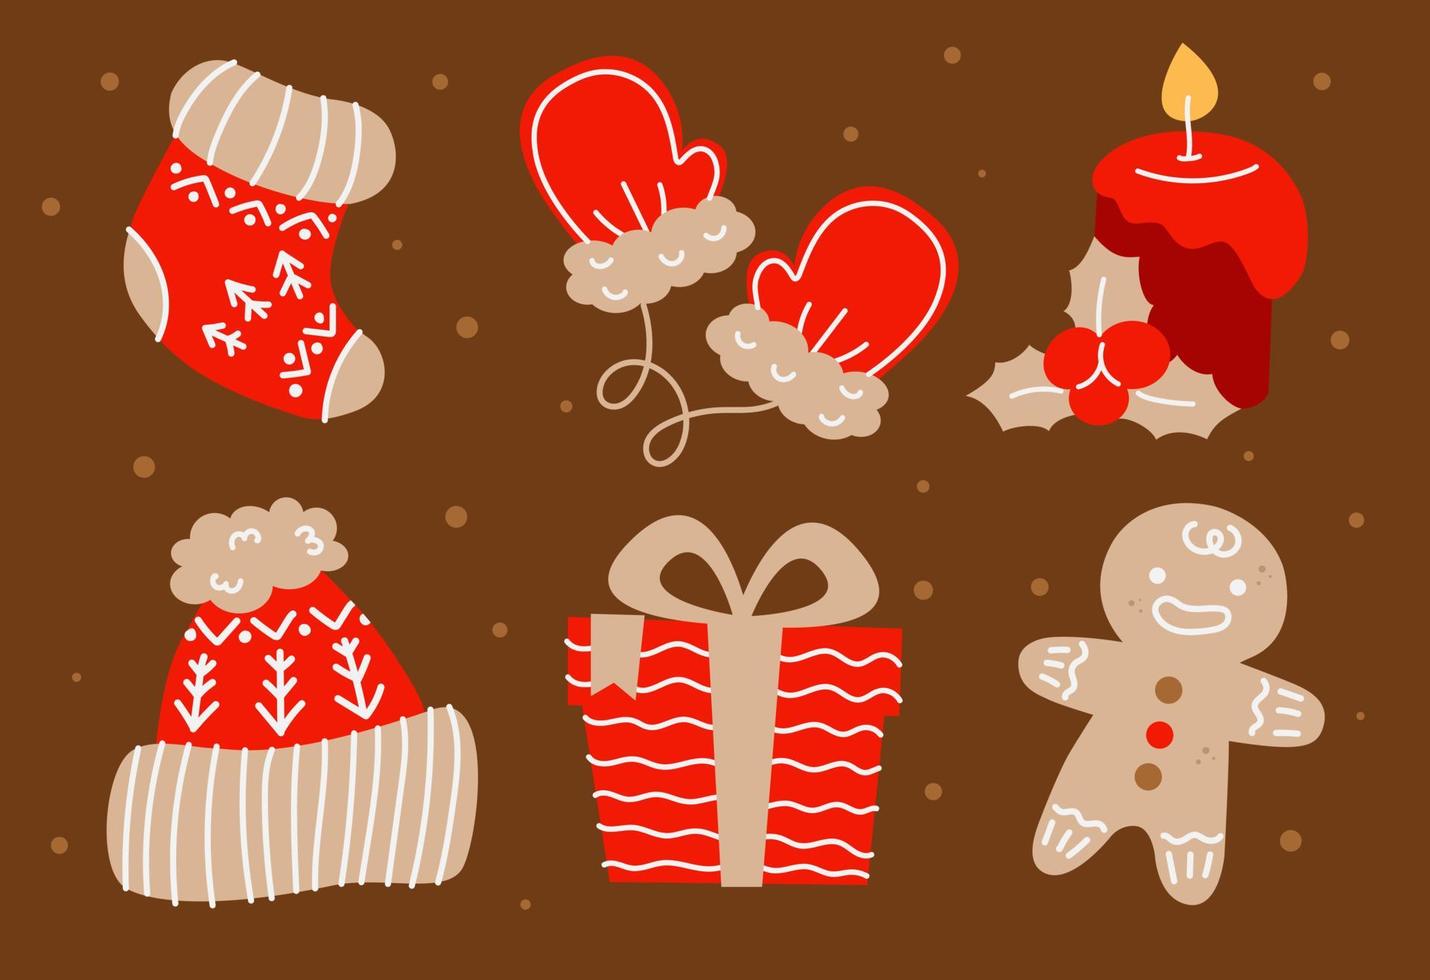 Natale e nuovo anno impostato con Pan di zenzero uomo, candela, Natale decorazioni, cacao e altro arredamento elementi. design per stampe, cartoline, manifesti vettore